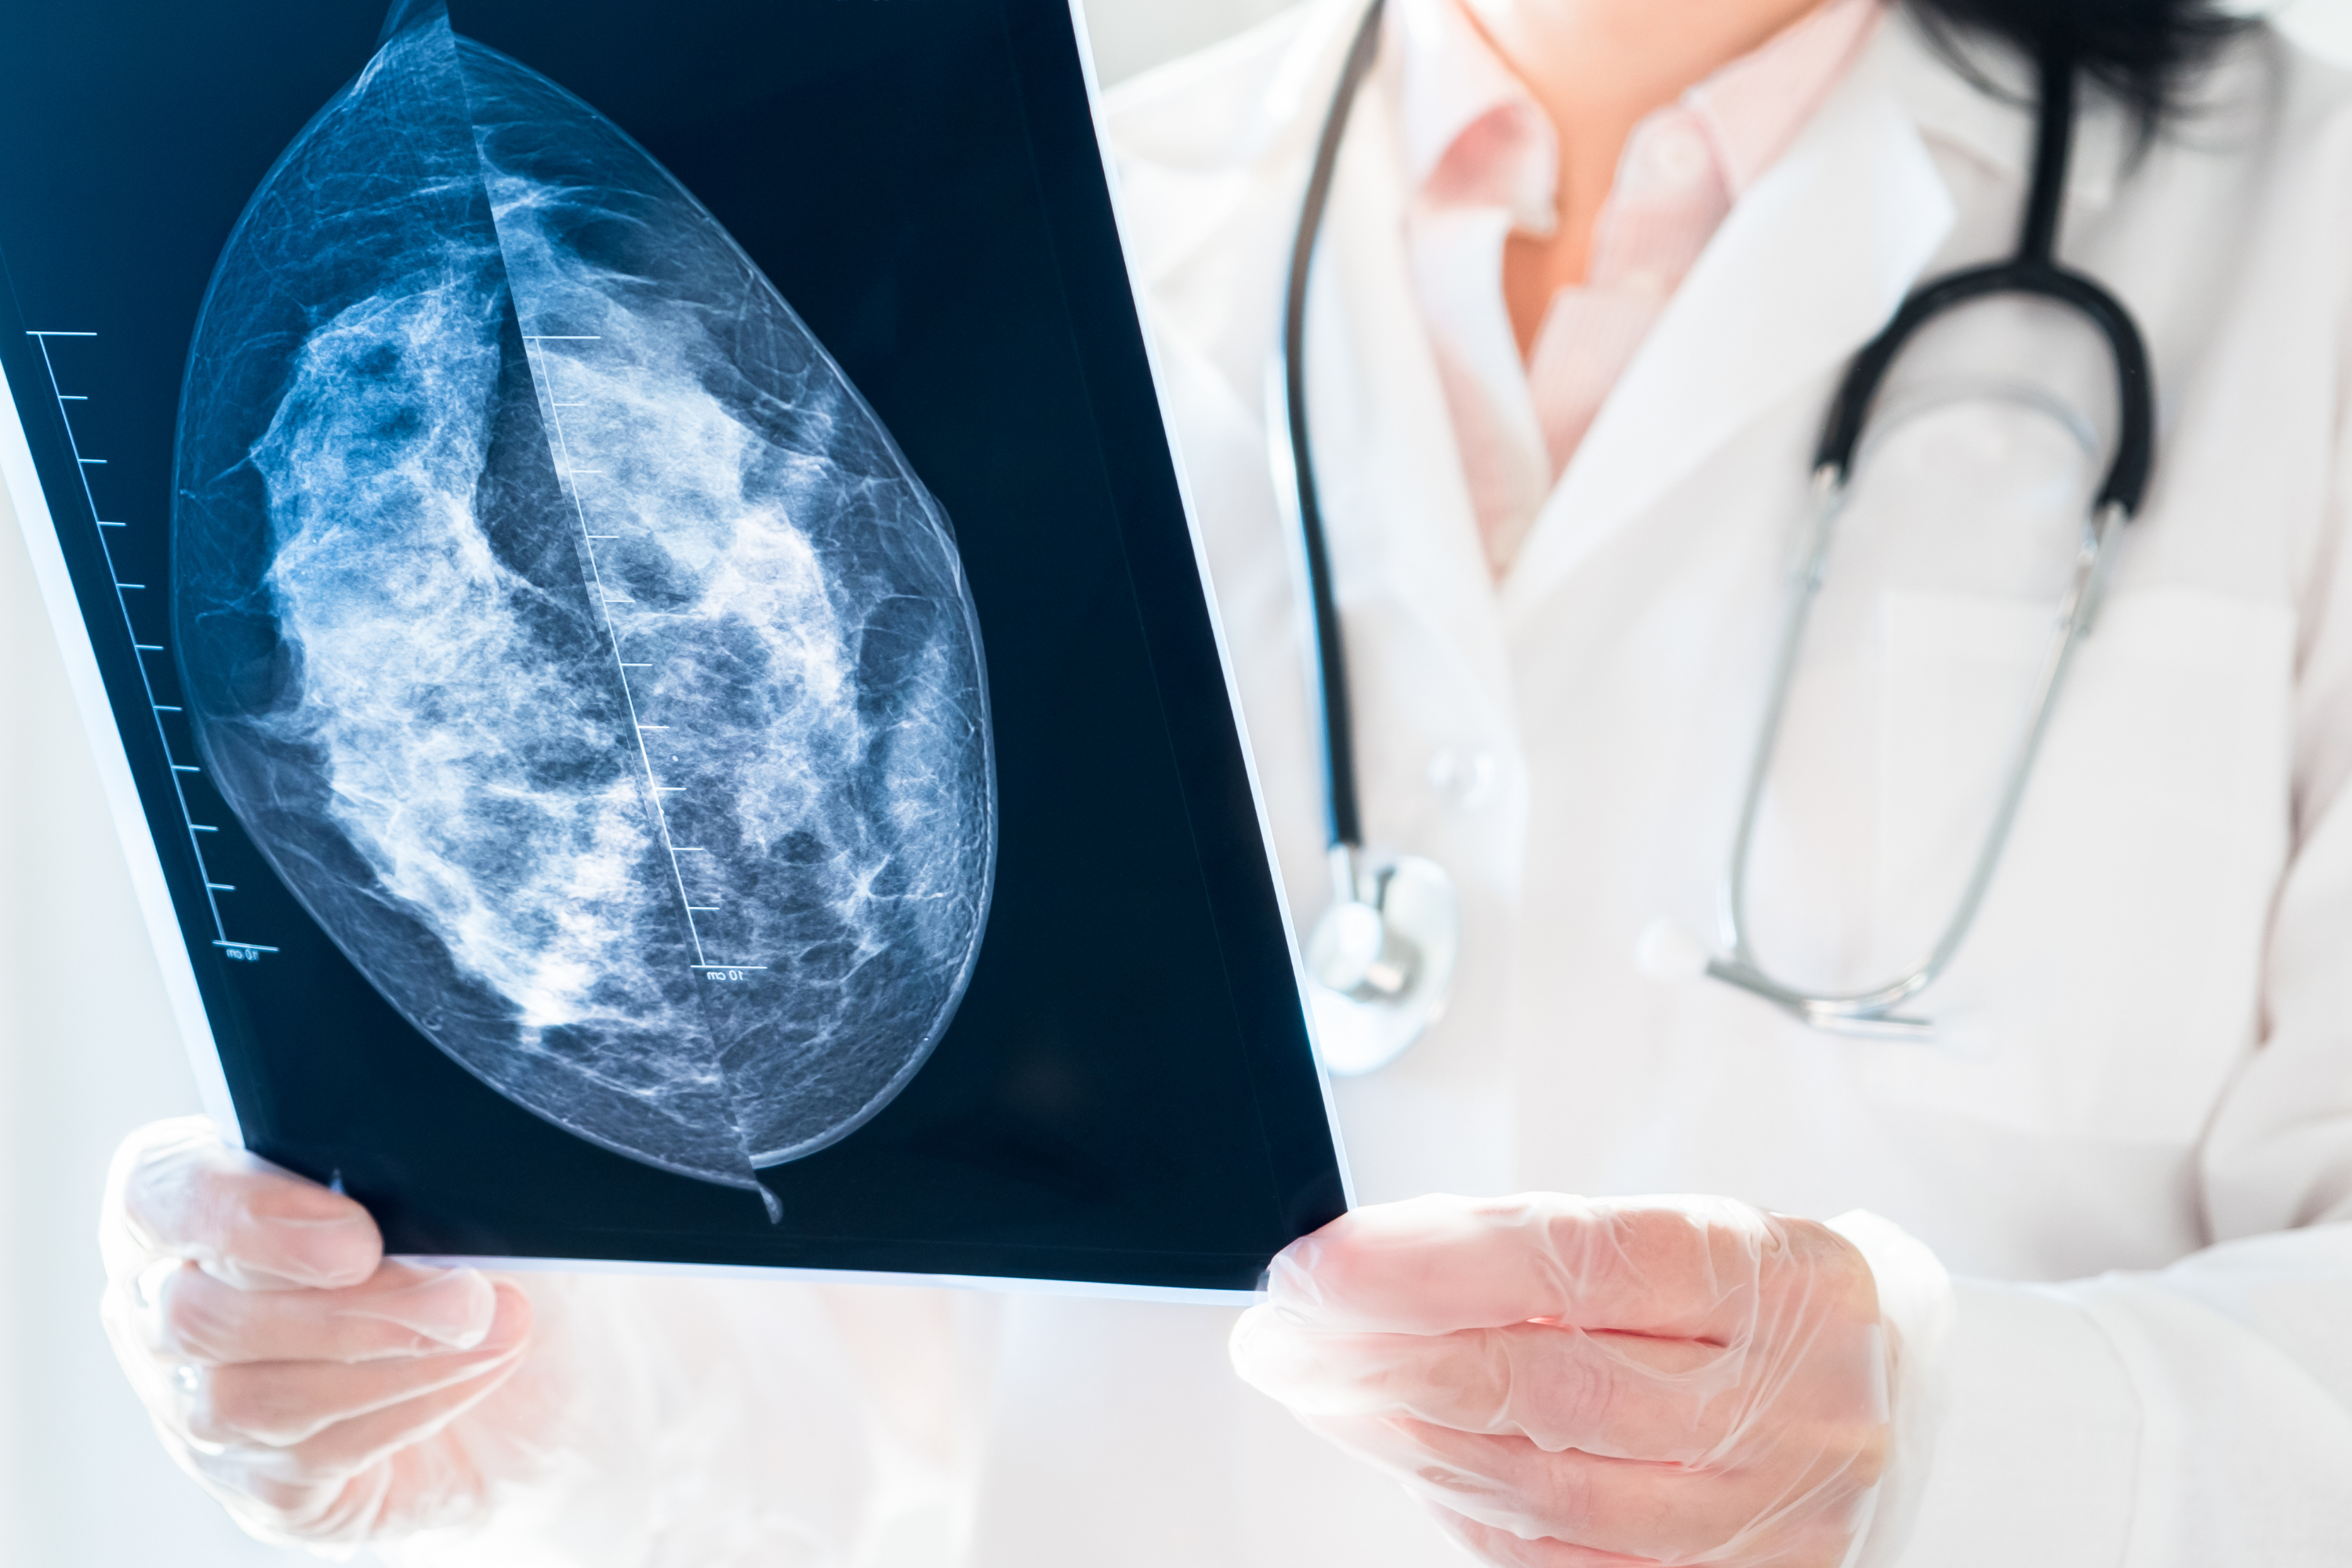 exame de mamografia - contra o câncer de mama